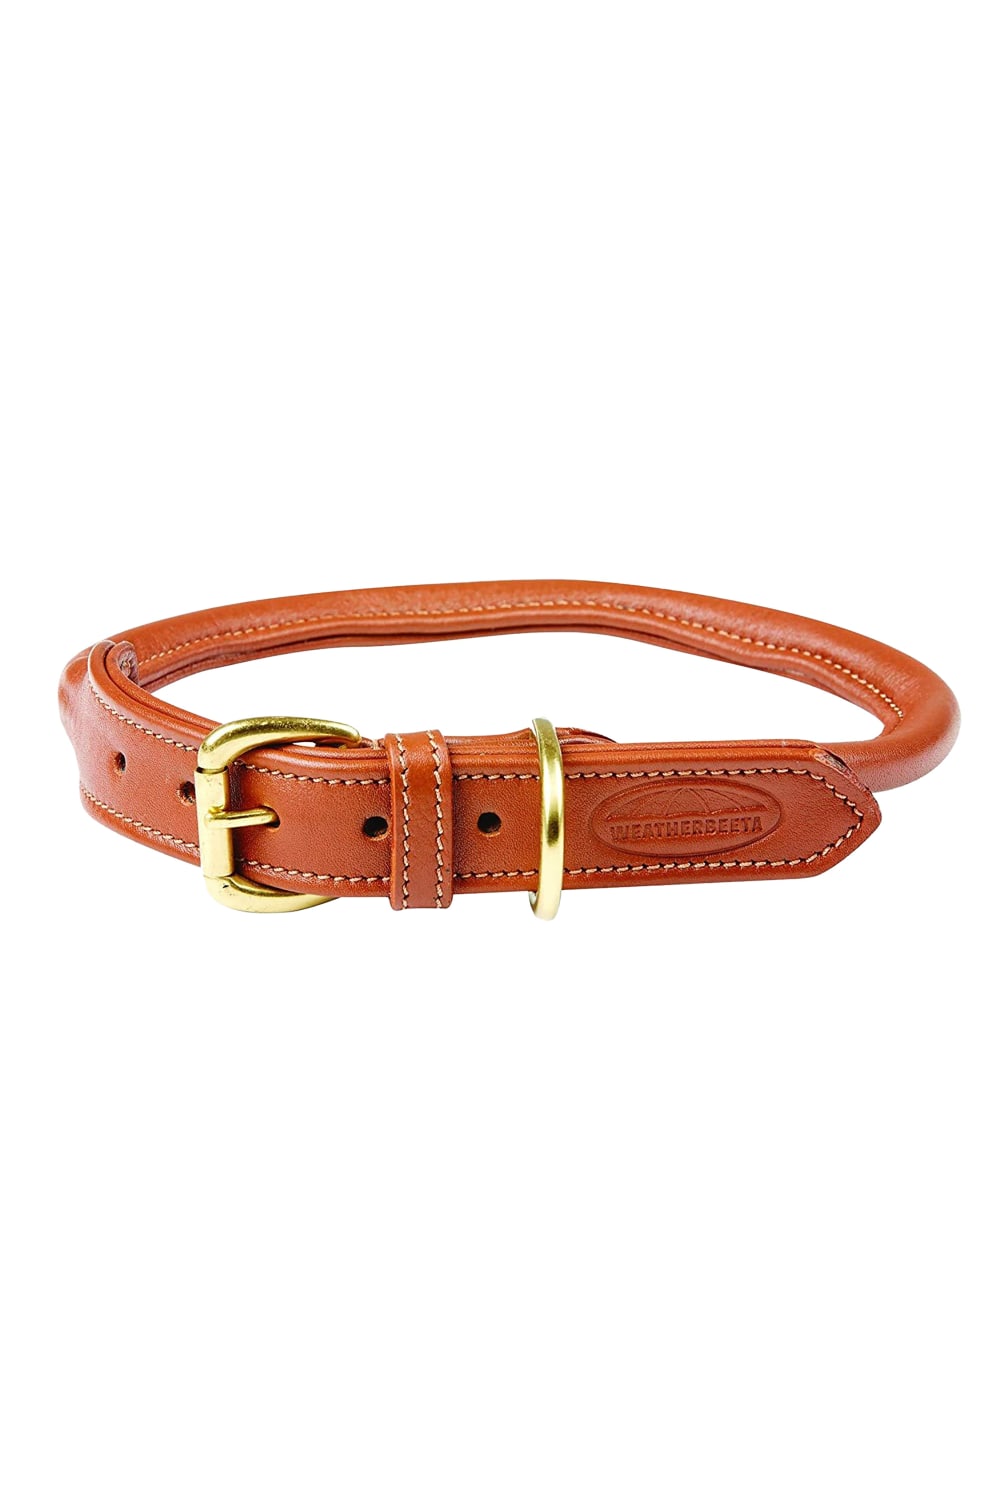 Weatherbeeta Rolled Leather Dog Collar (Tan) (M)